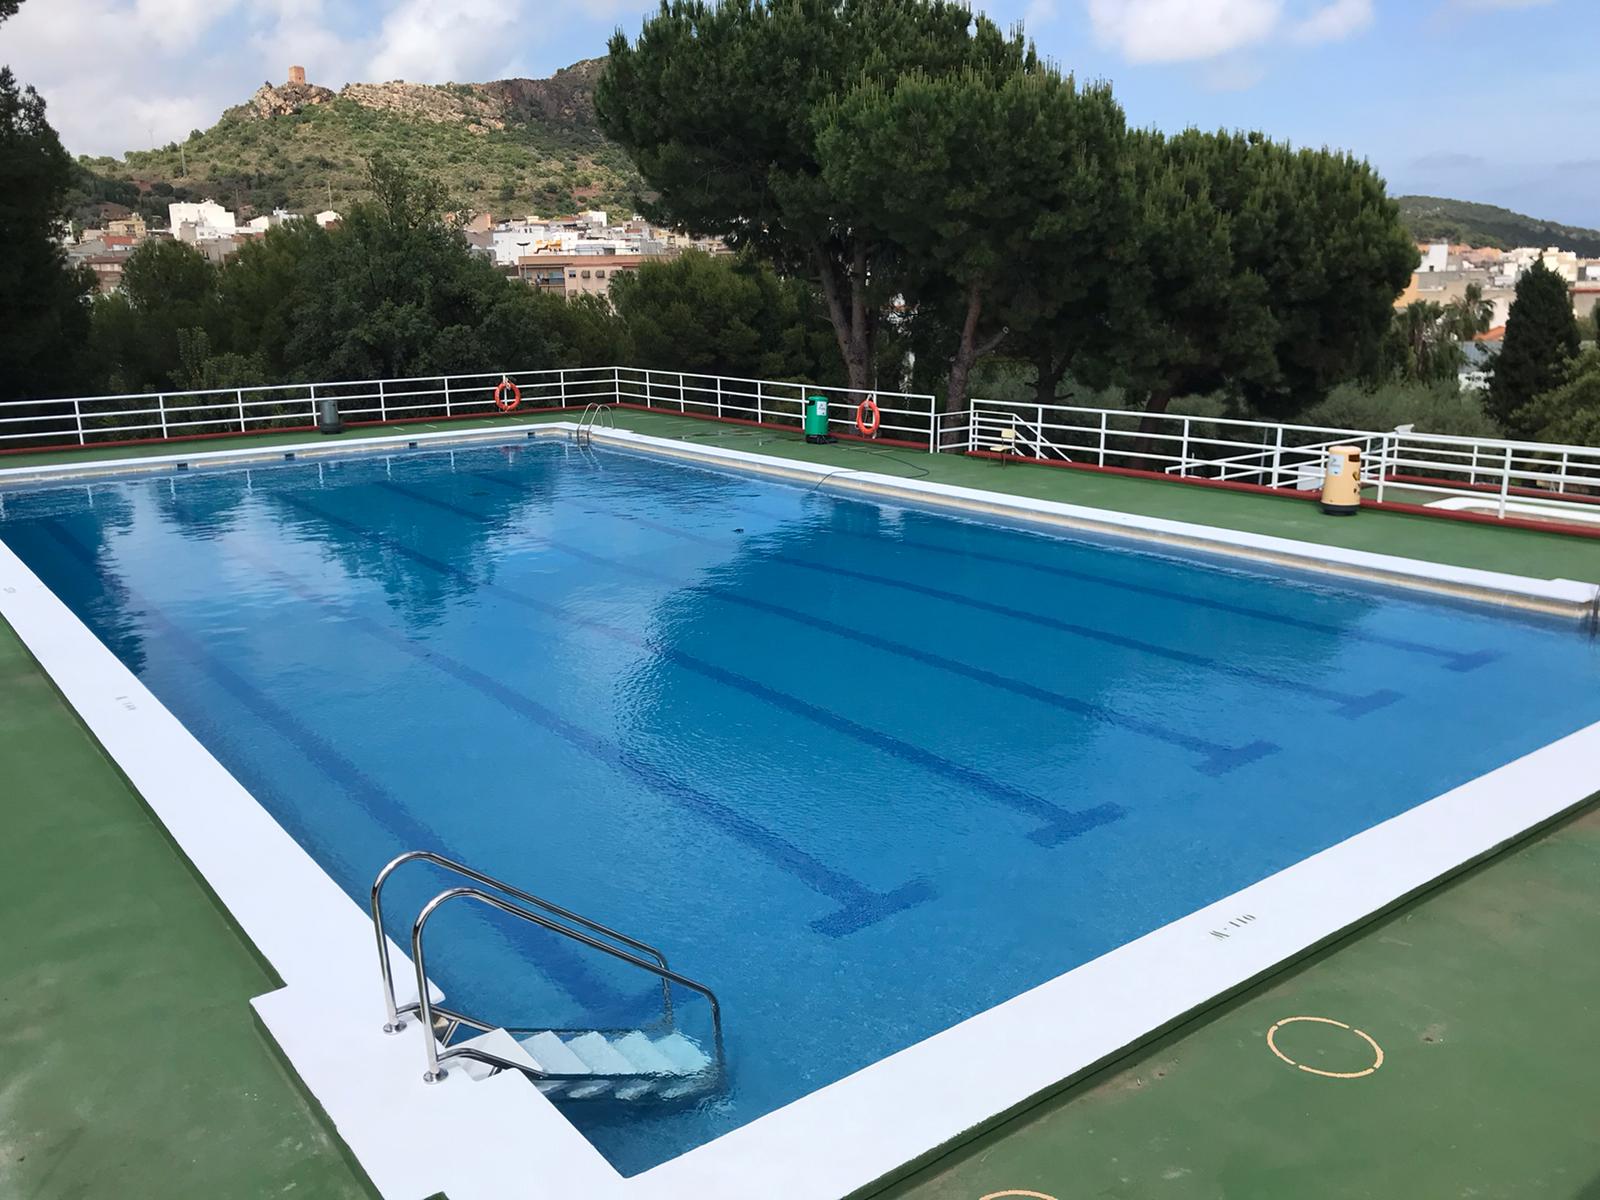 Almenara mejora la accesibilidad a la zona deportiva y piscina municipal